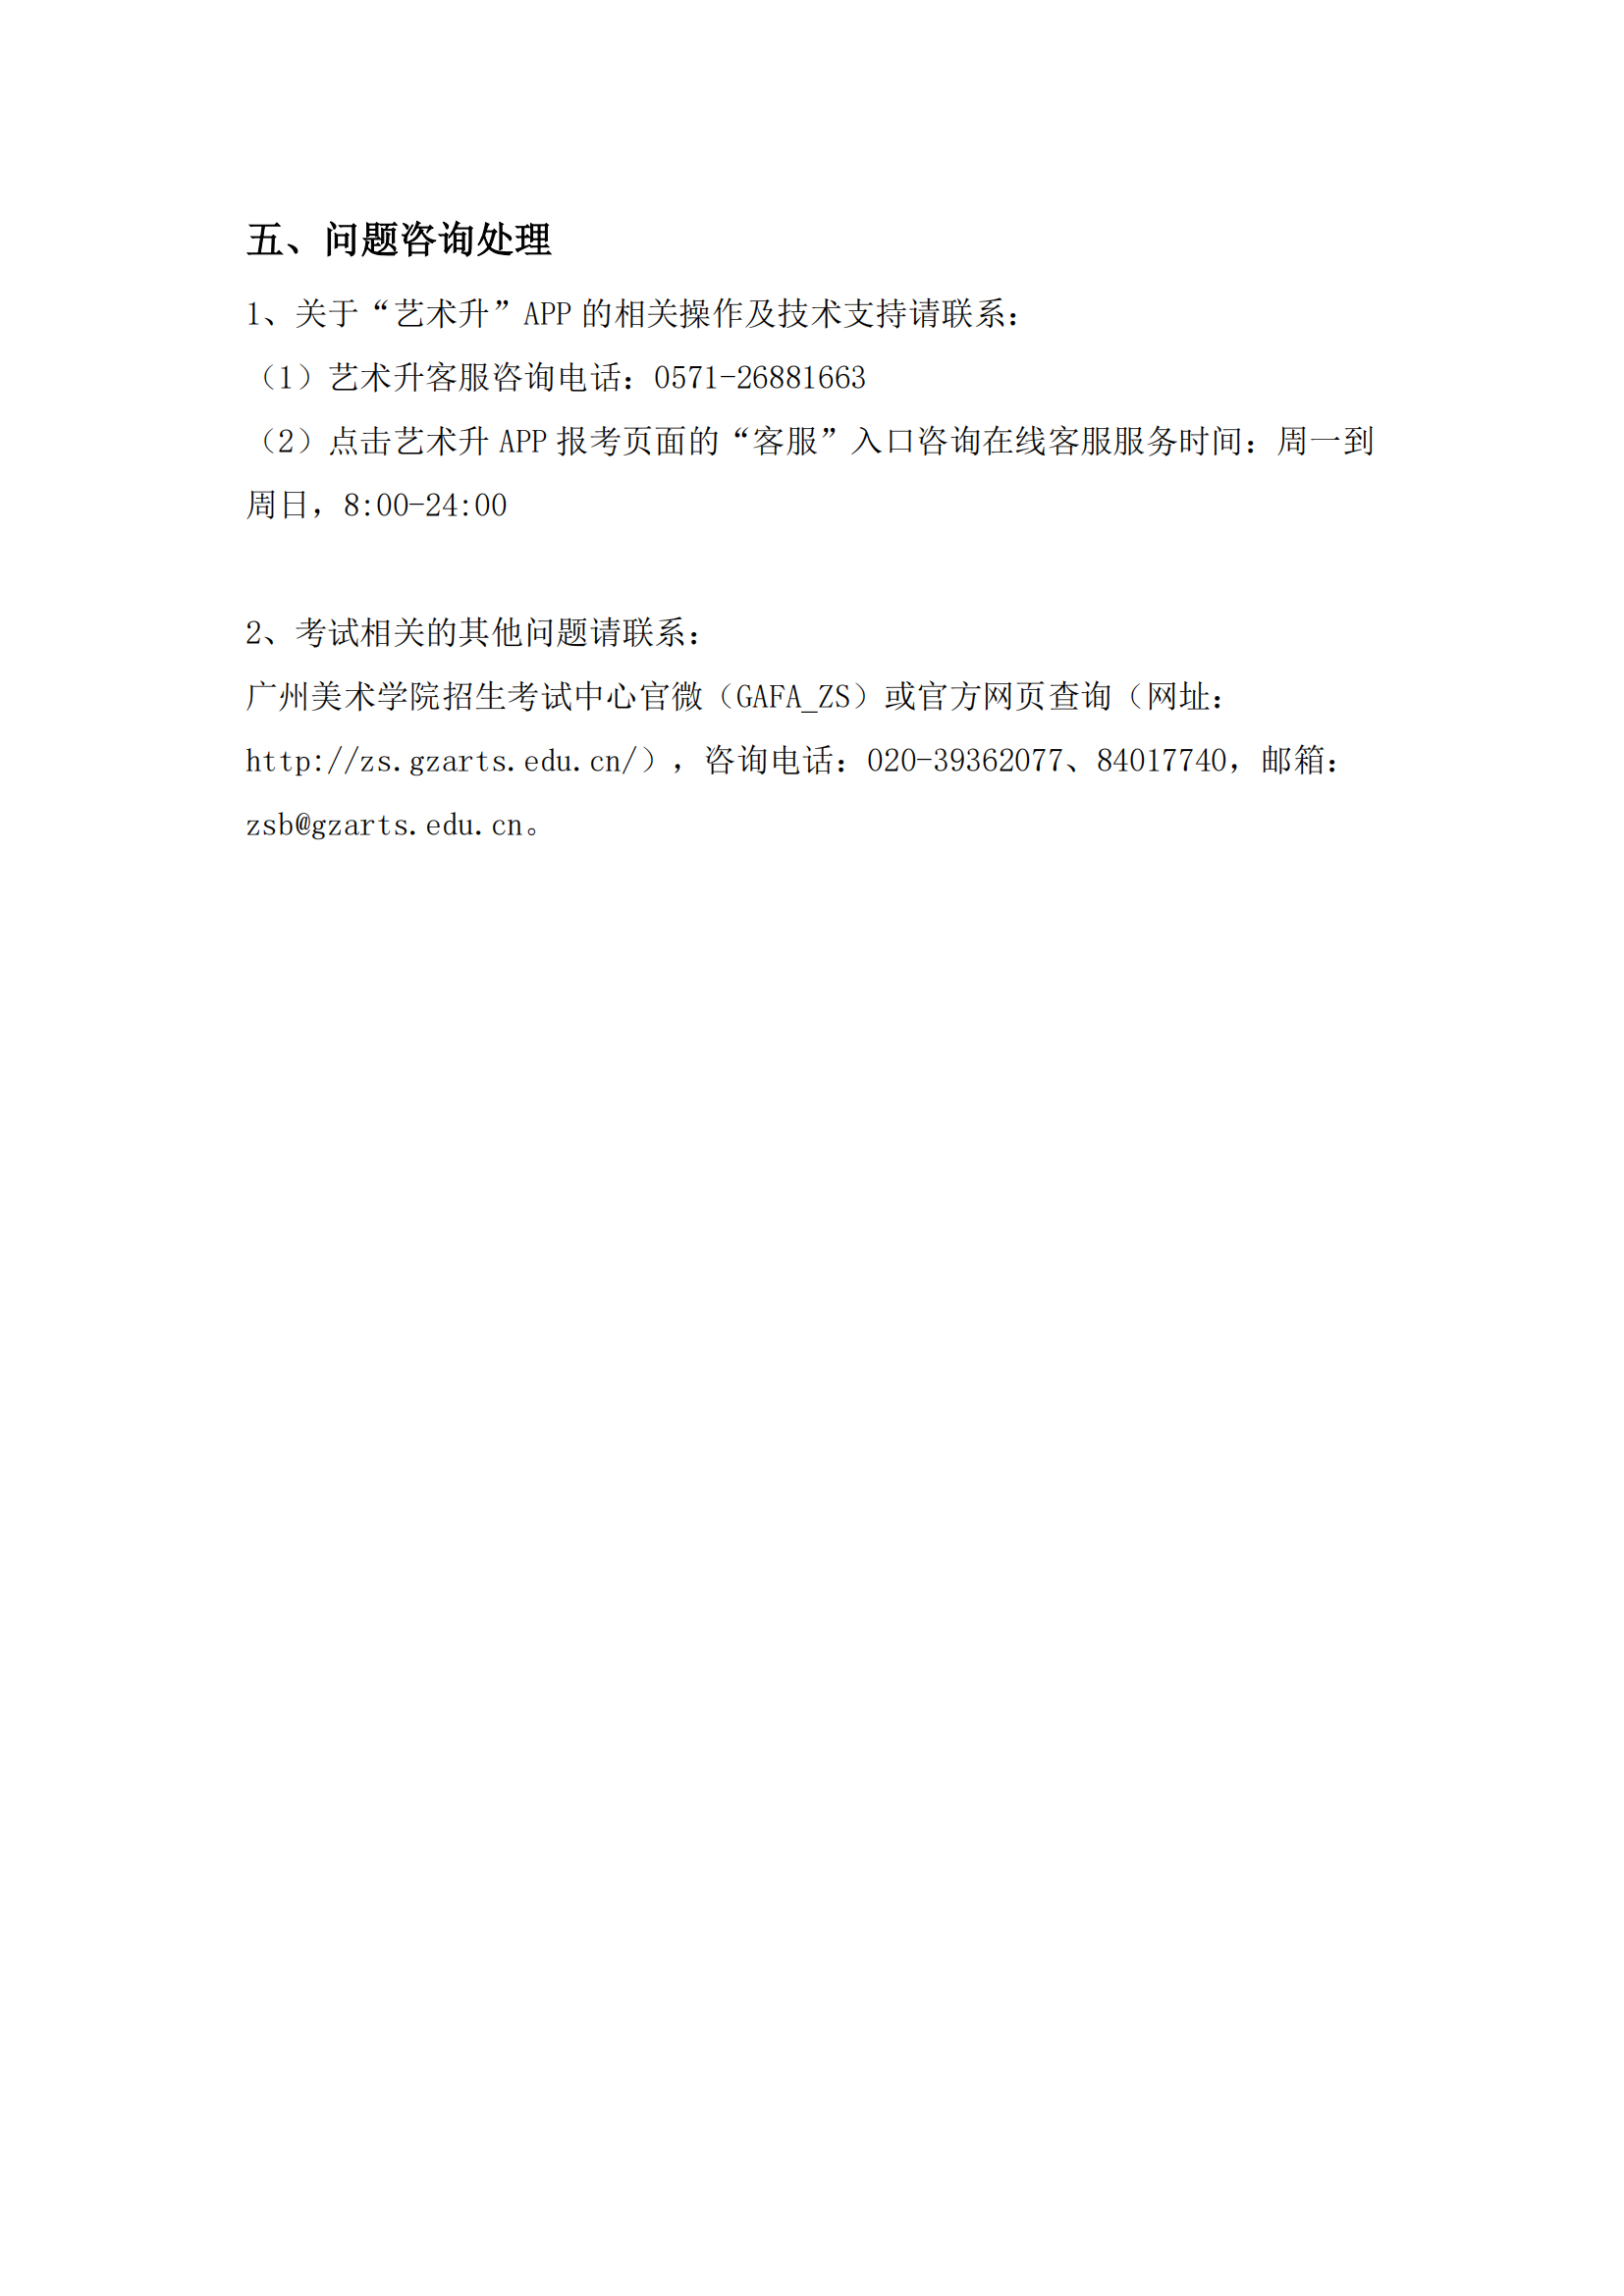 附件1：广州美术学院艺术升APP网络考试操作说明_16.png